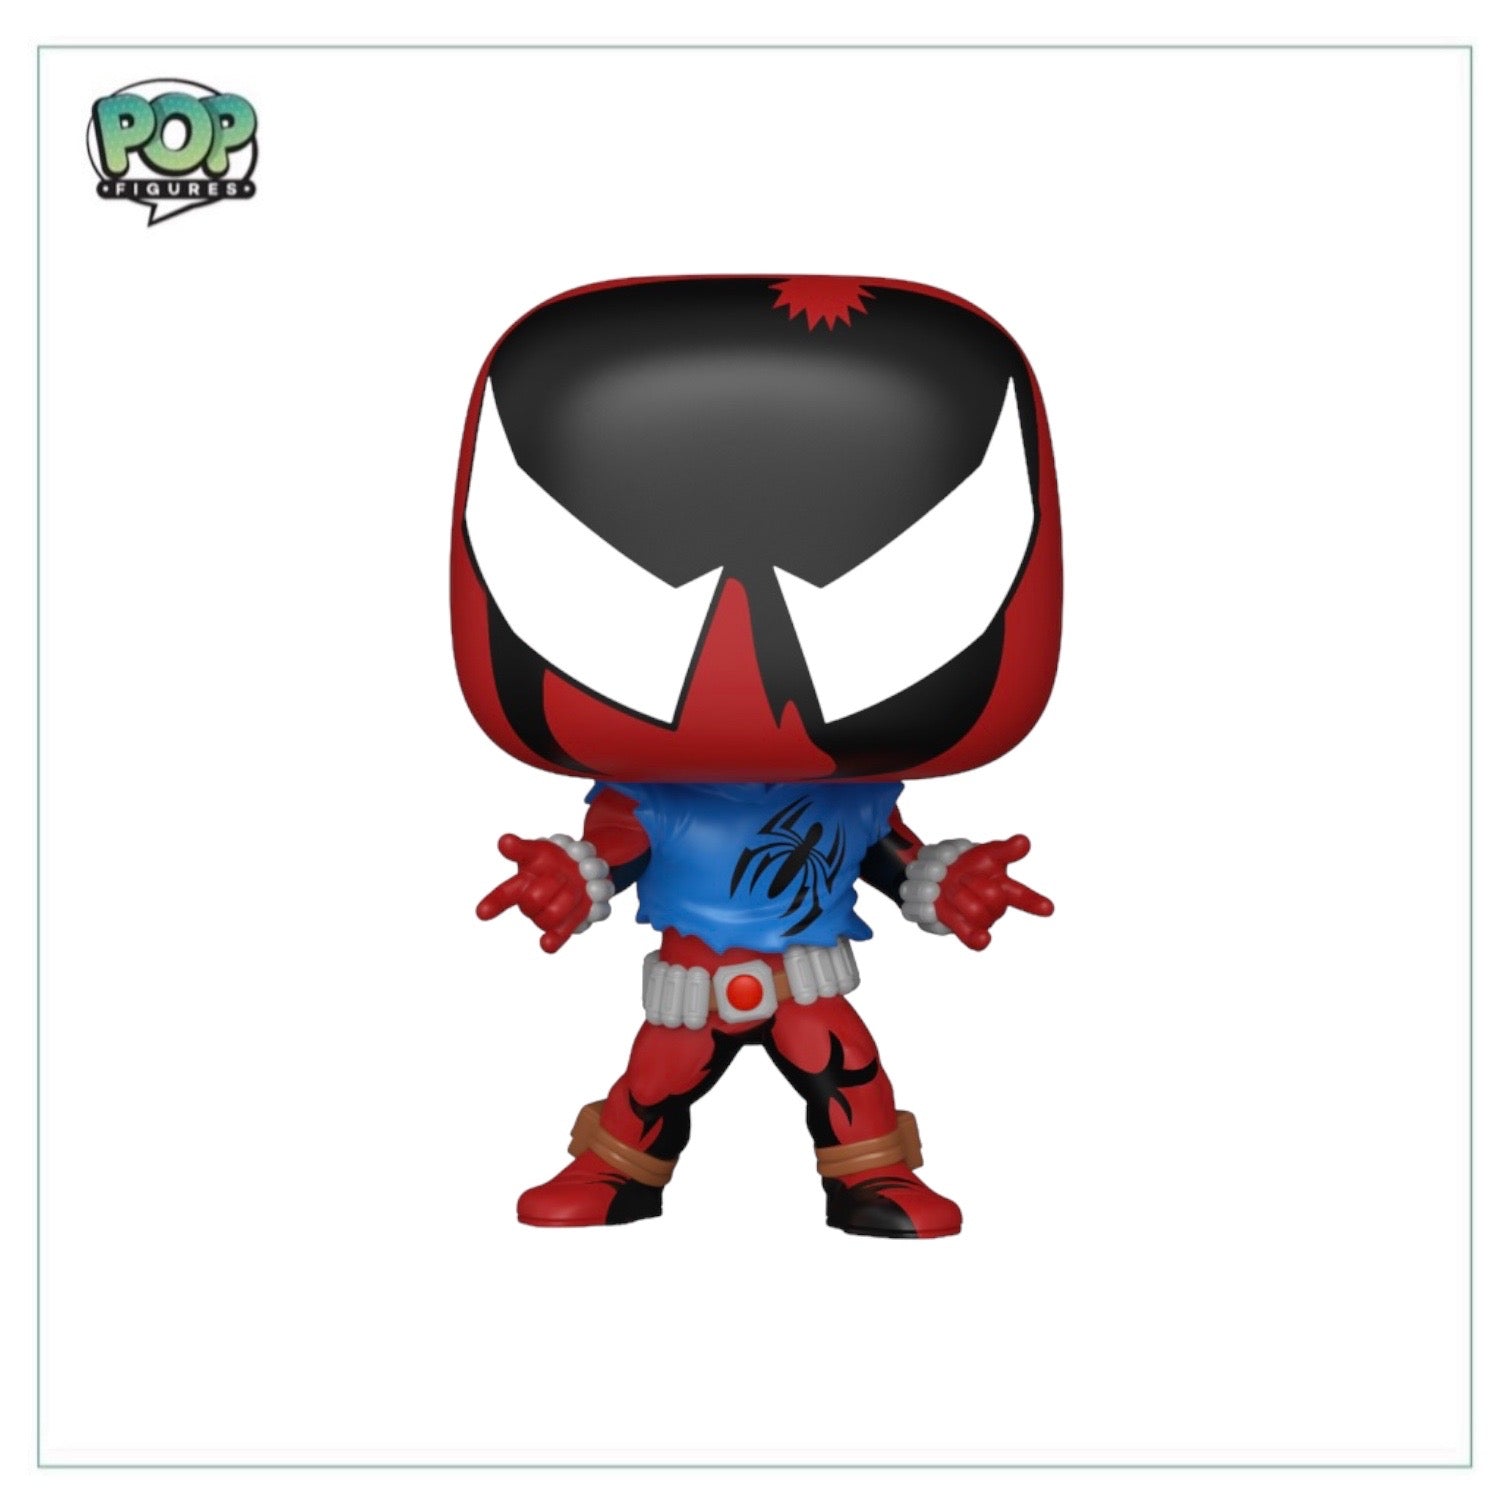 Scarlet Spider #1232 Funko Pop! - Spider-Man Across The Spider-Verse - Walmart Exclusive